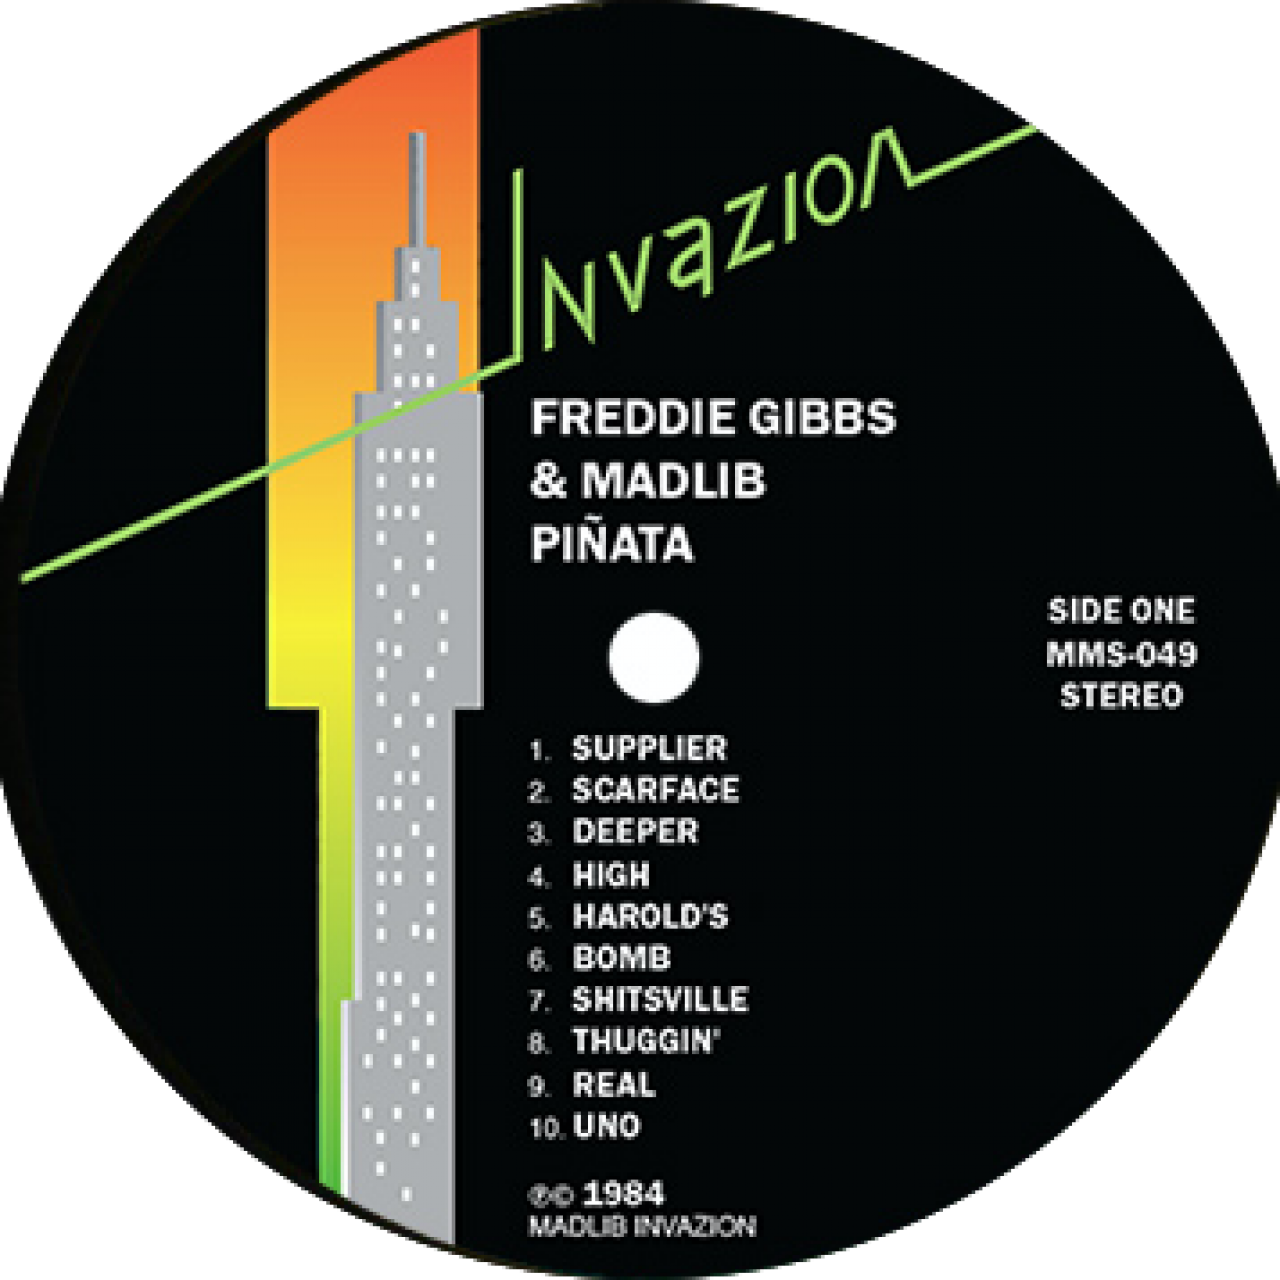 Freddie Gibbs & Madlib - Pinata 84 vinyl label